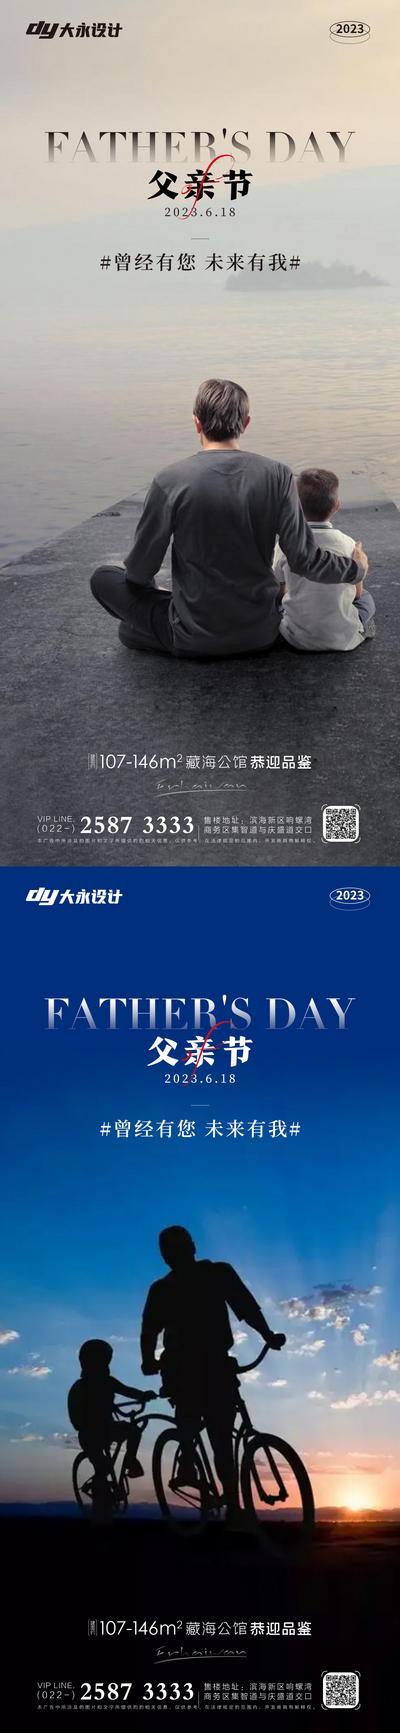 南门网 海报 创意 系列 父亲节 房地产 公历节日 父子 背影 大气 简约 设计